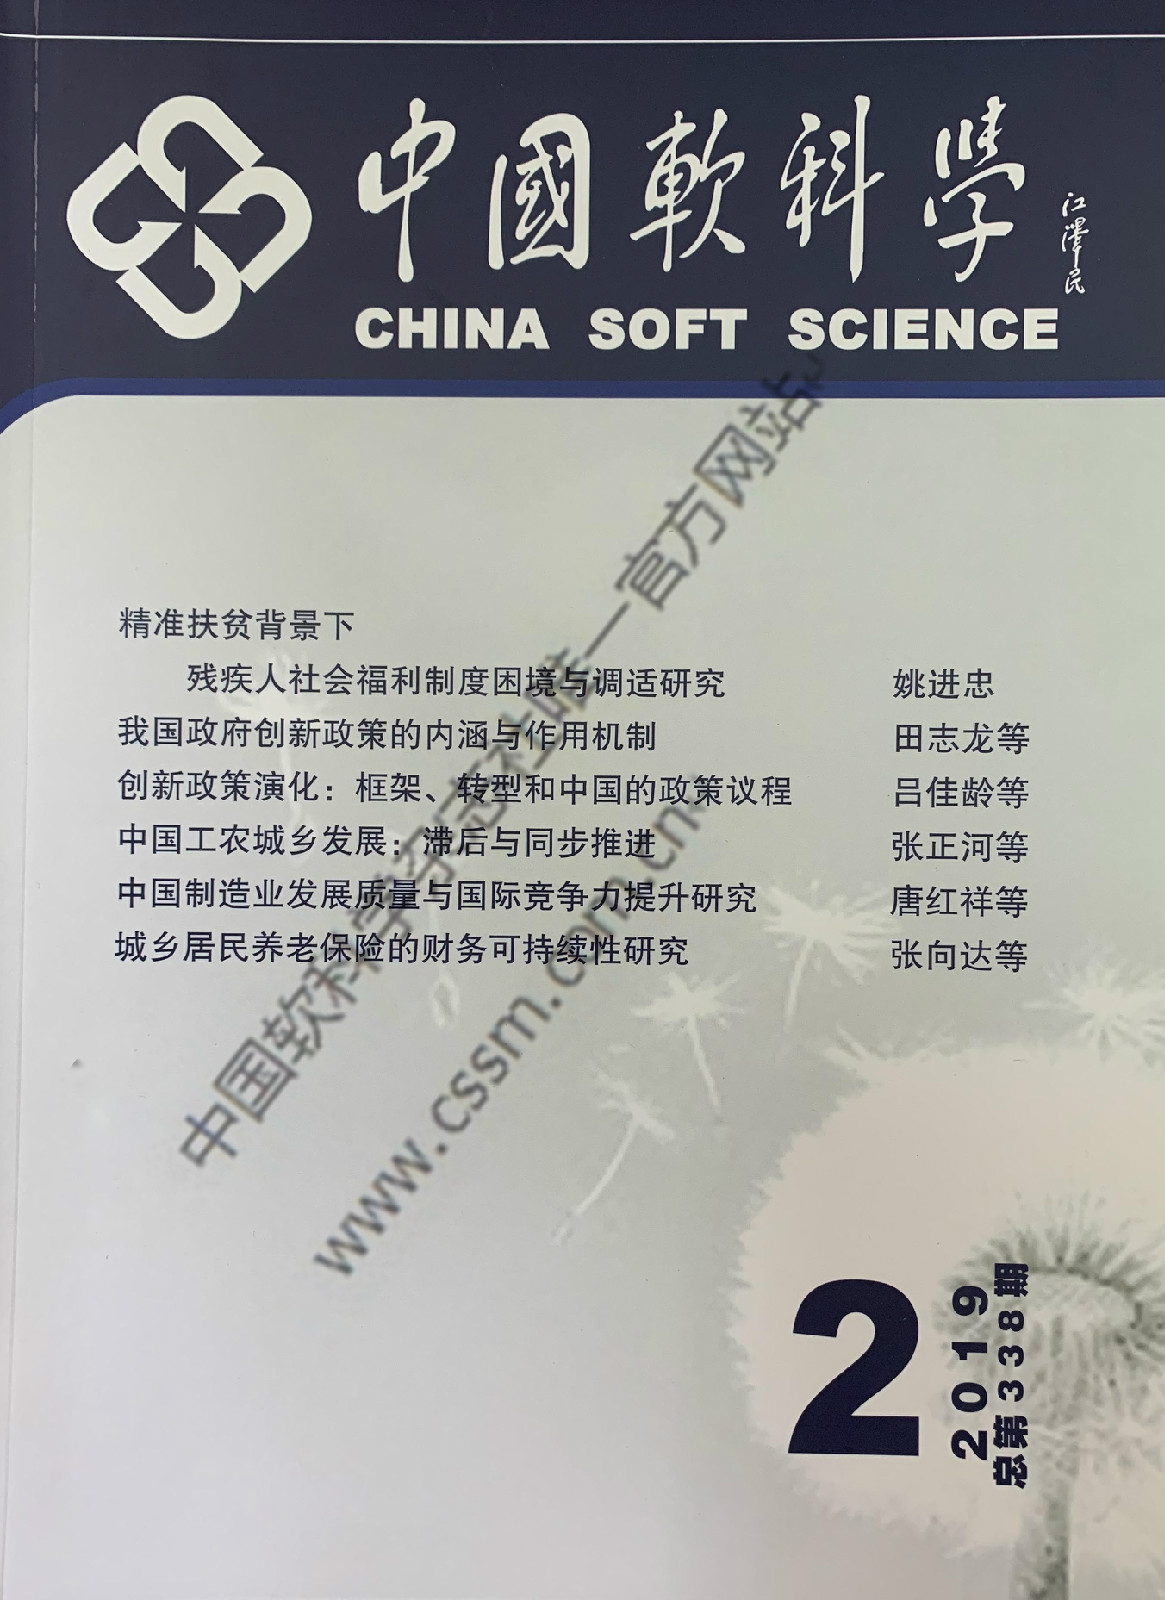 张正河教授在《中国软科学》发表重要研究成果